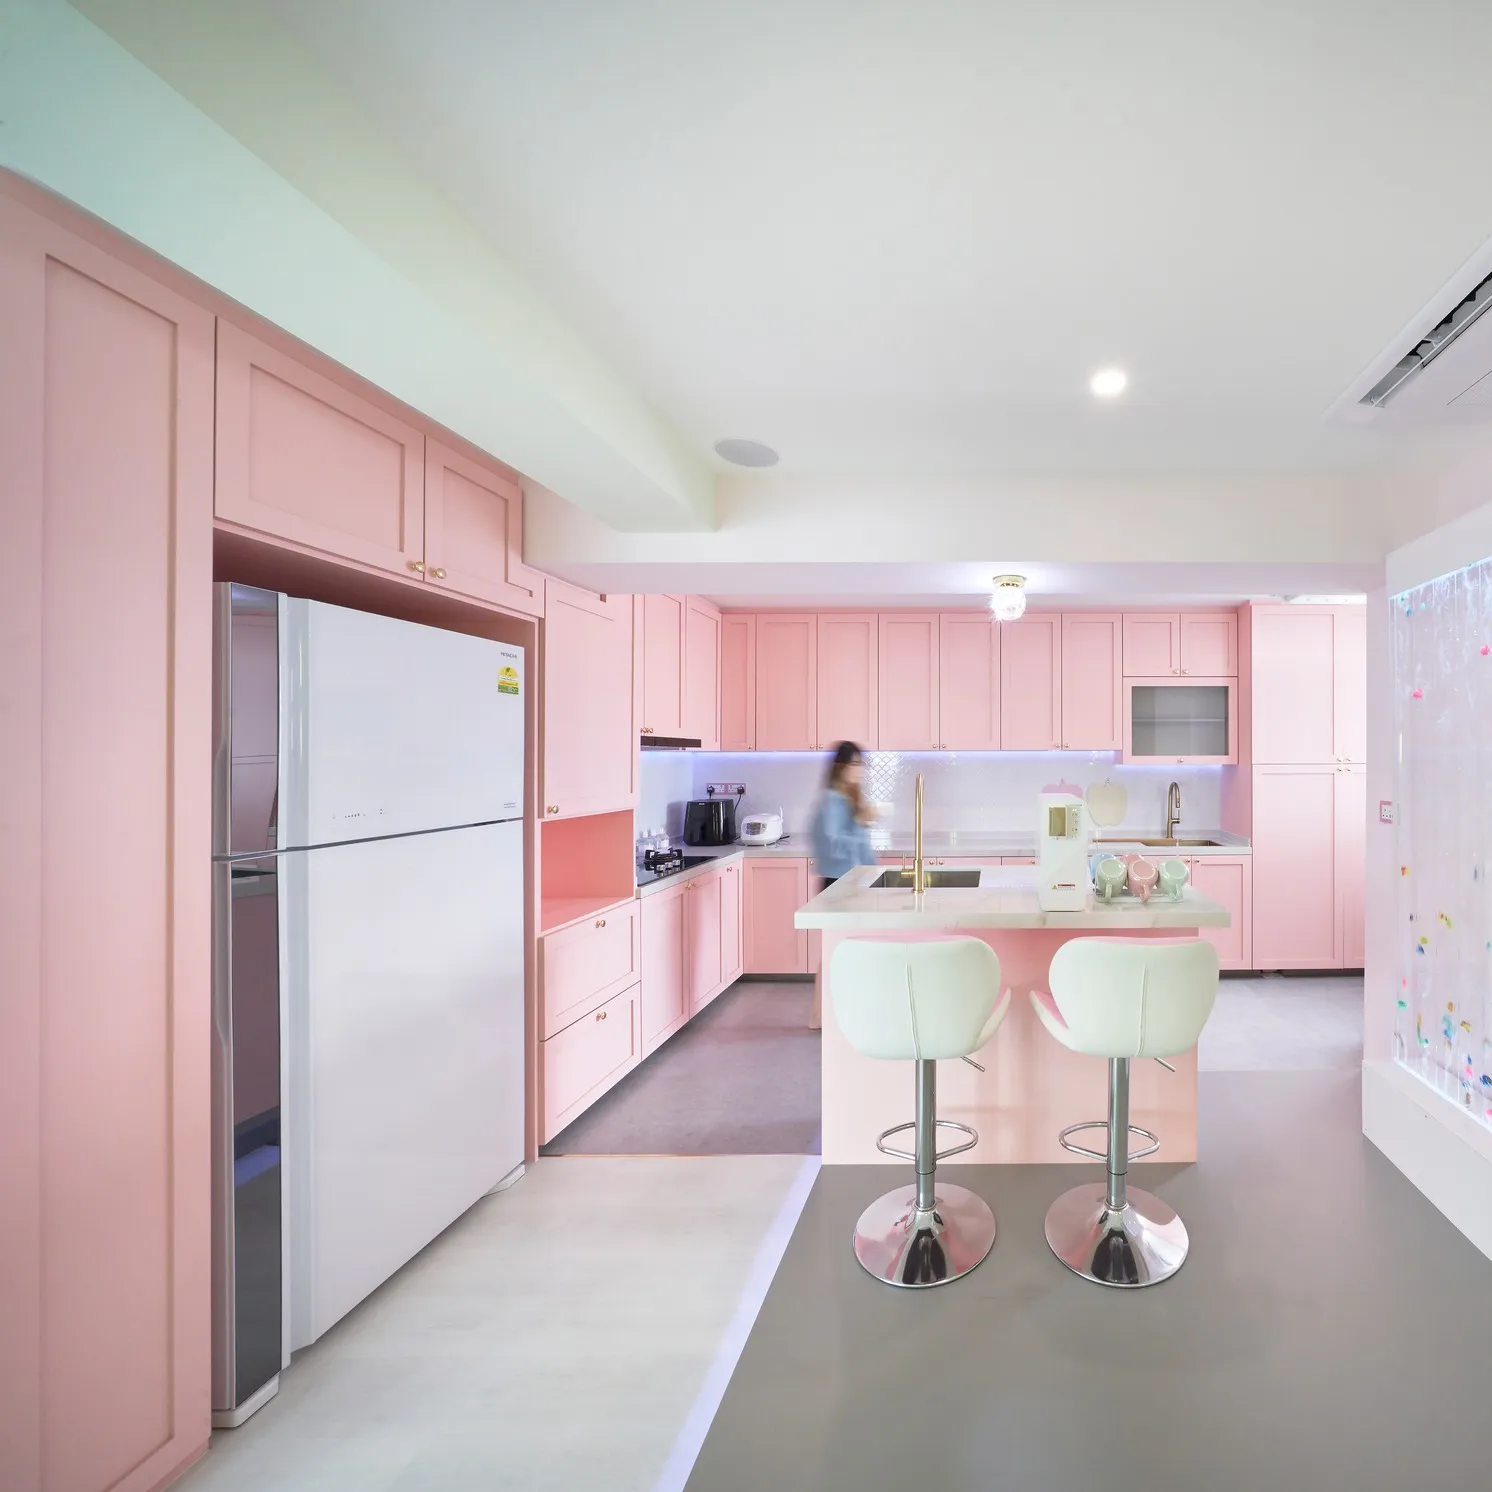 الوردي الحديثة الذكية شاكر نمط الأثاث المطبخ خزانات الحائط مع أبواب زجاجية